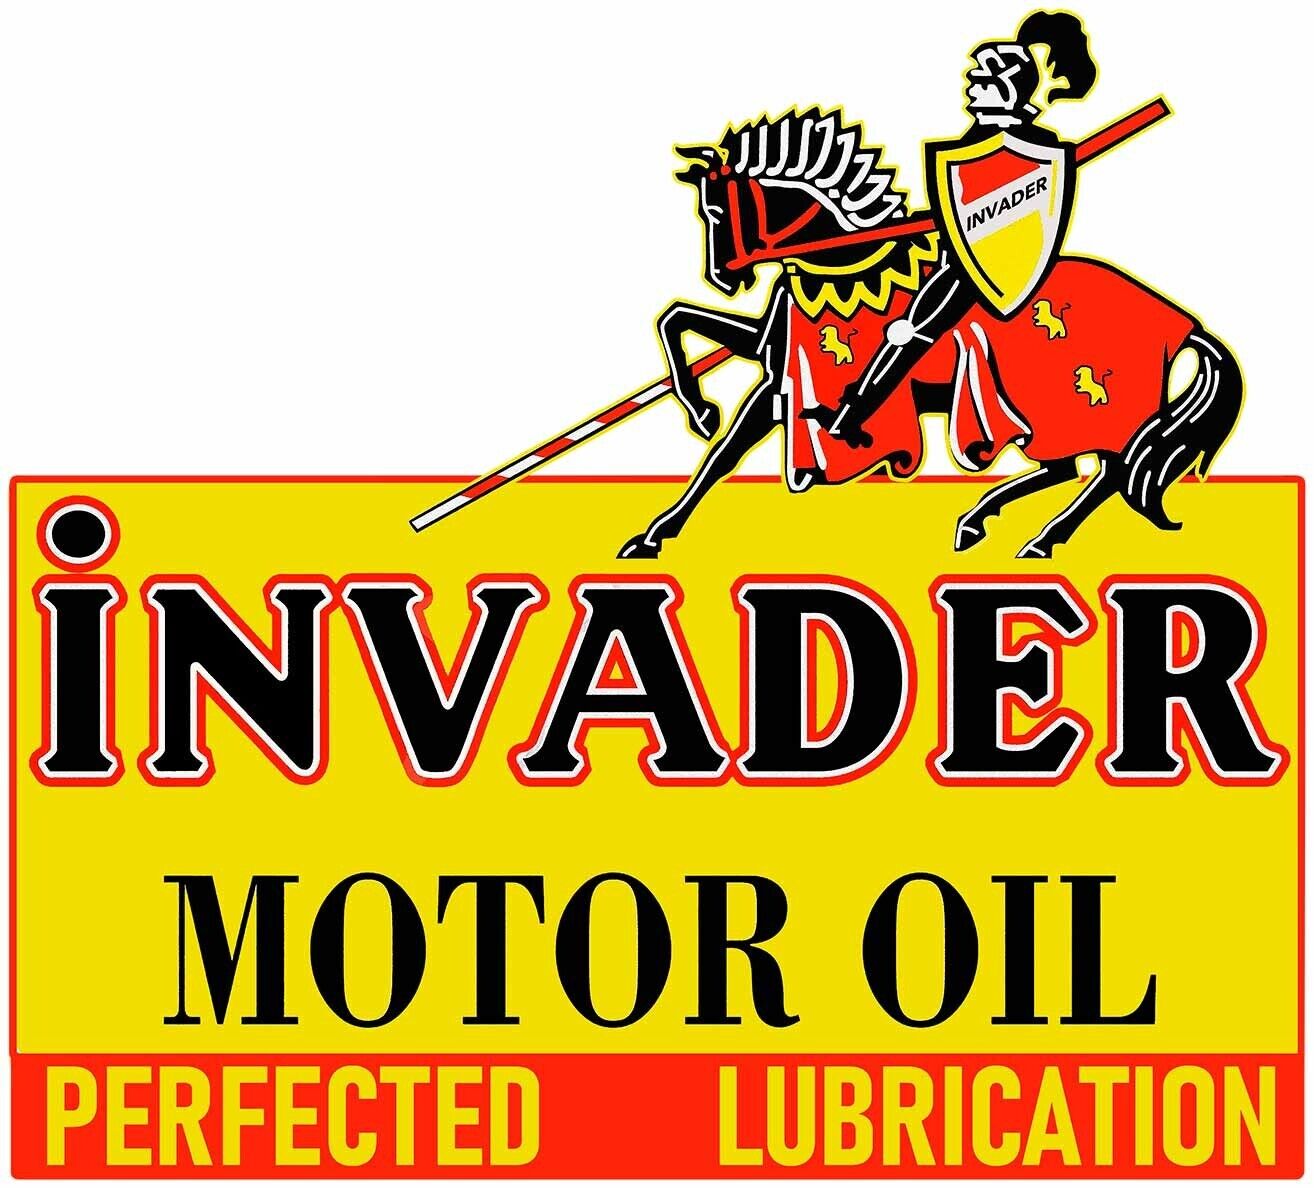 Invader Motor Oil Laser Cut Metal Sign